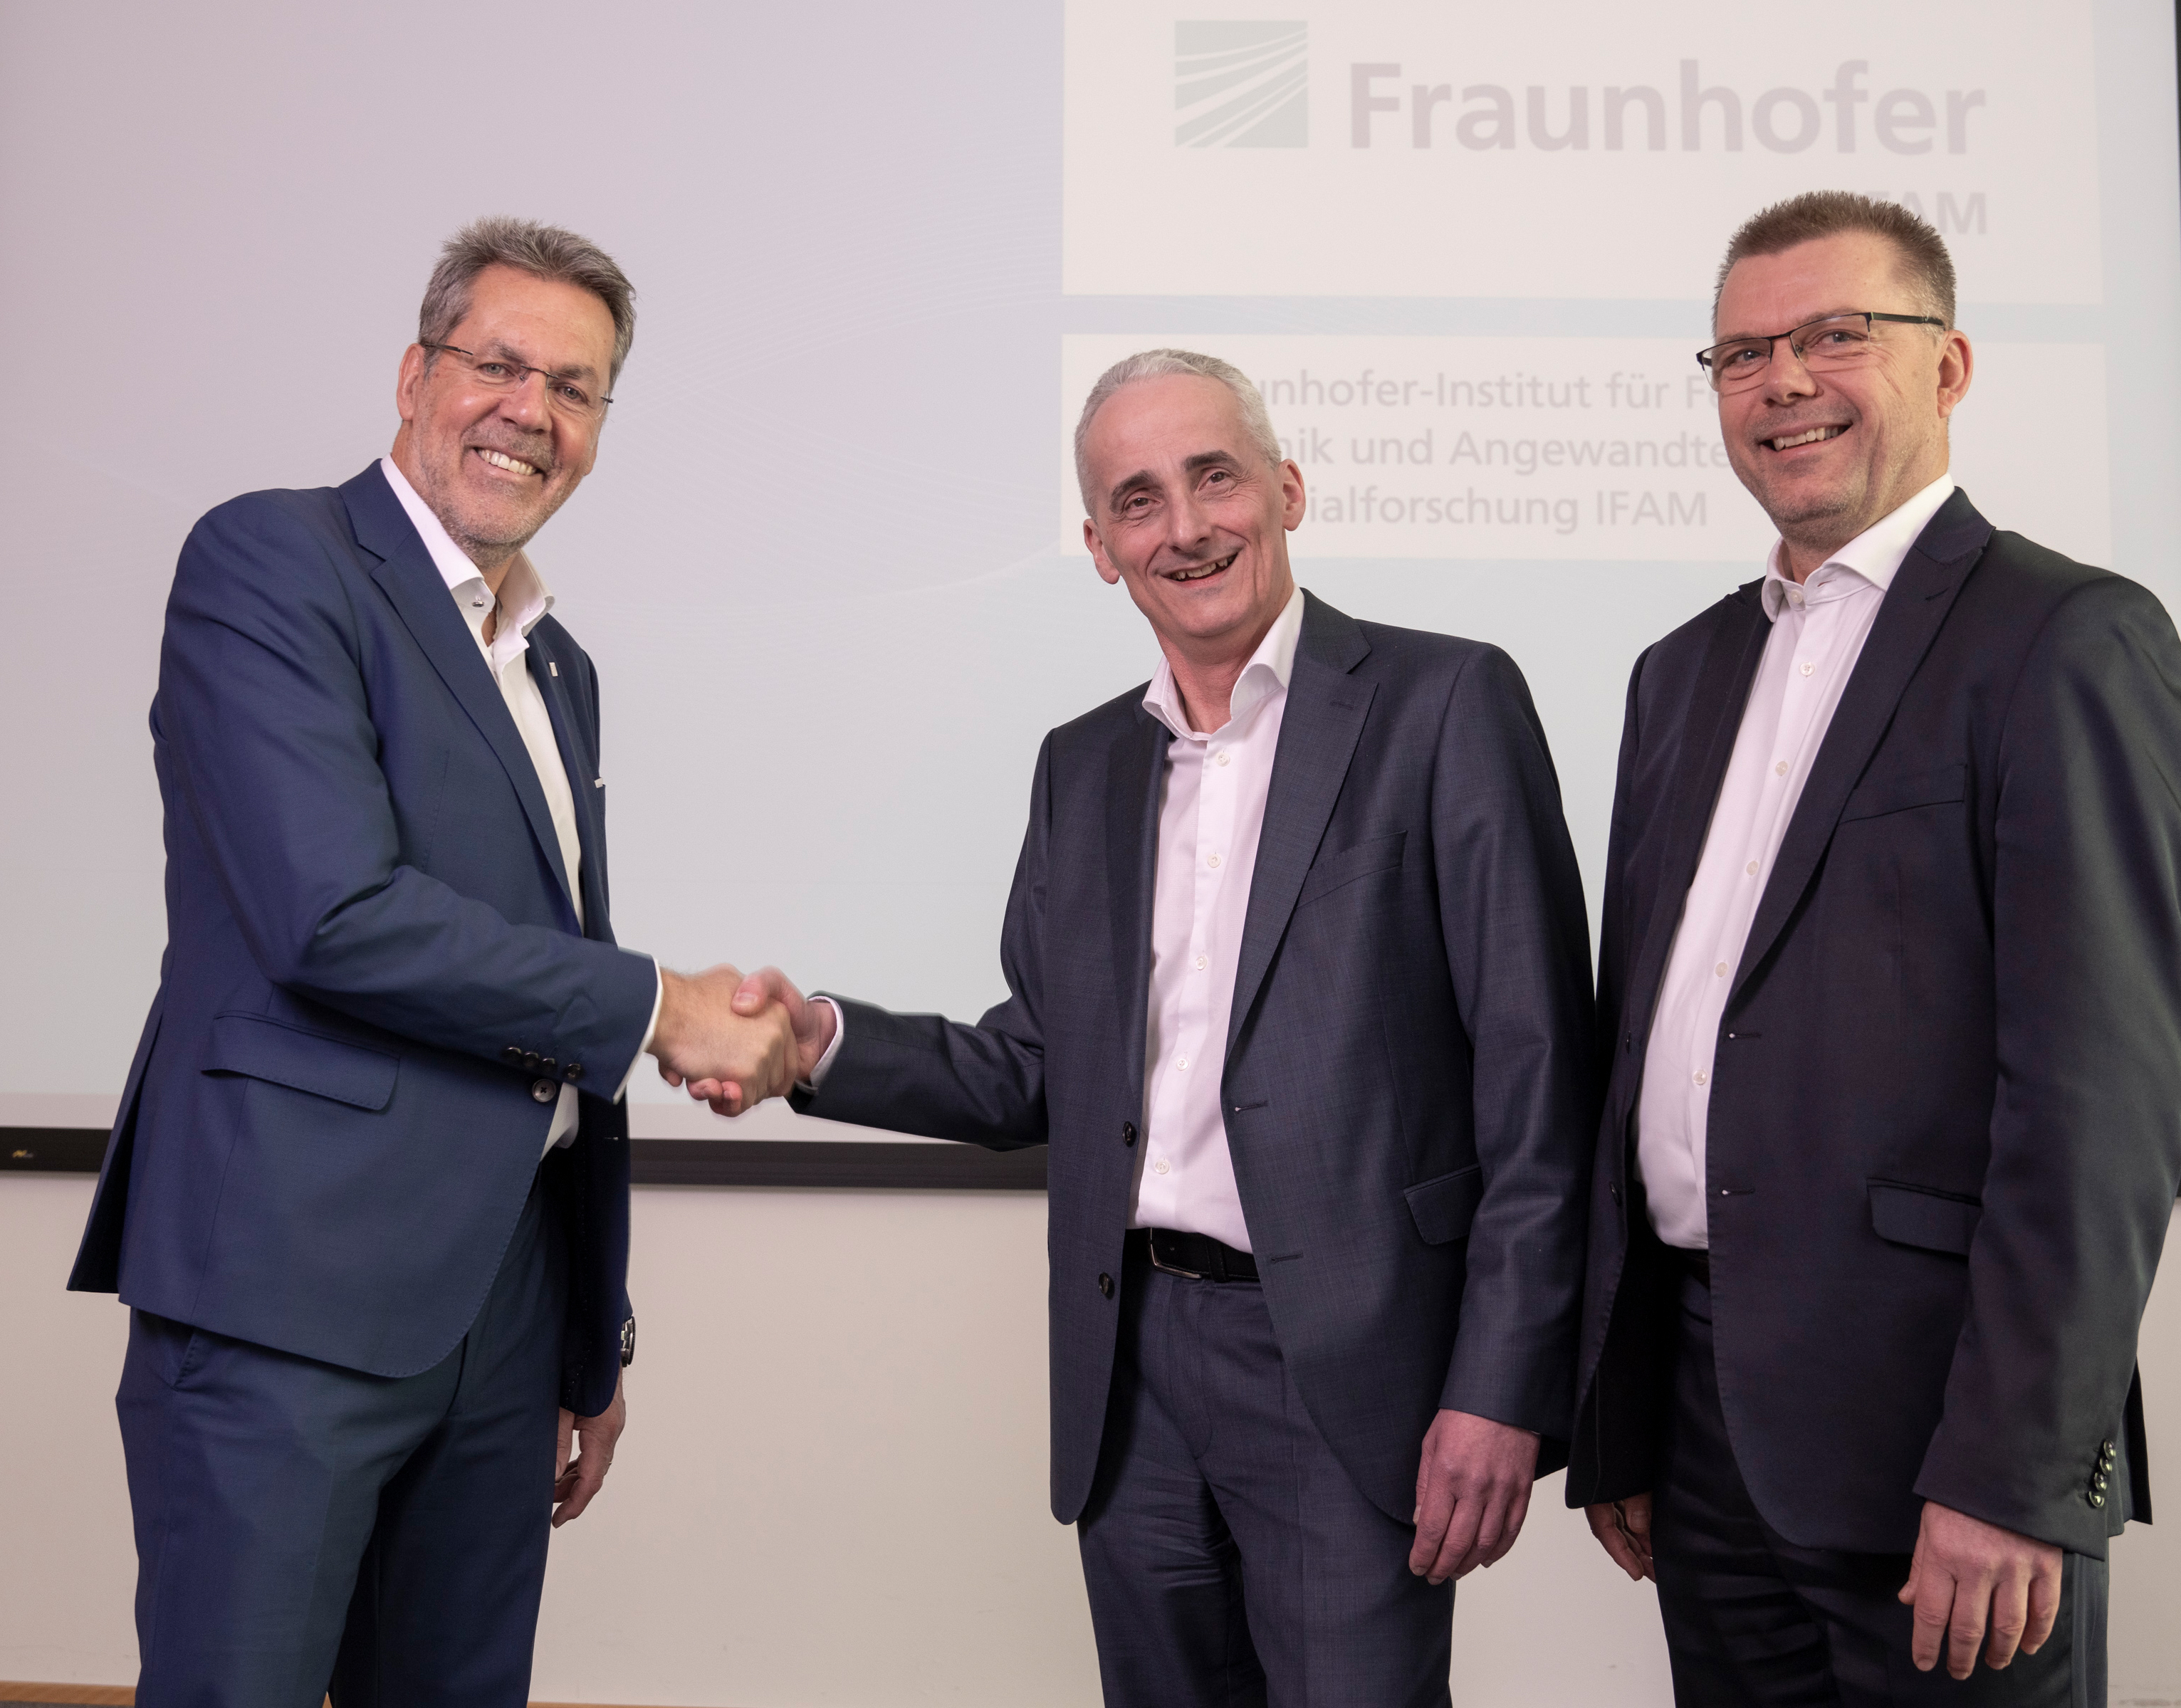 Prof. Dr.-Ing. Matthias Busse wurde von Prof. Dr. Bernd Mayer und Prof. Dr.-Ing. Thomas Weißgärber (v.l.n.r.) in den Ruhestand verabschiedet. Sie führen das Fraunhofer IFAM nun gemeinsam in die Zukunft.